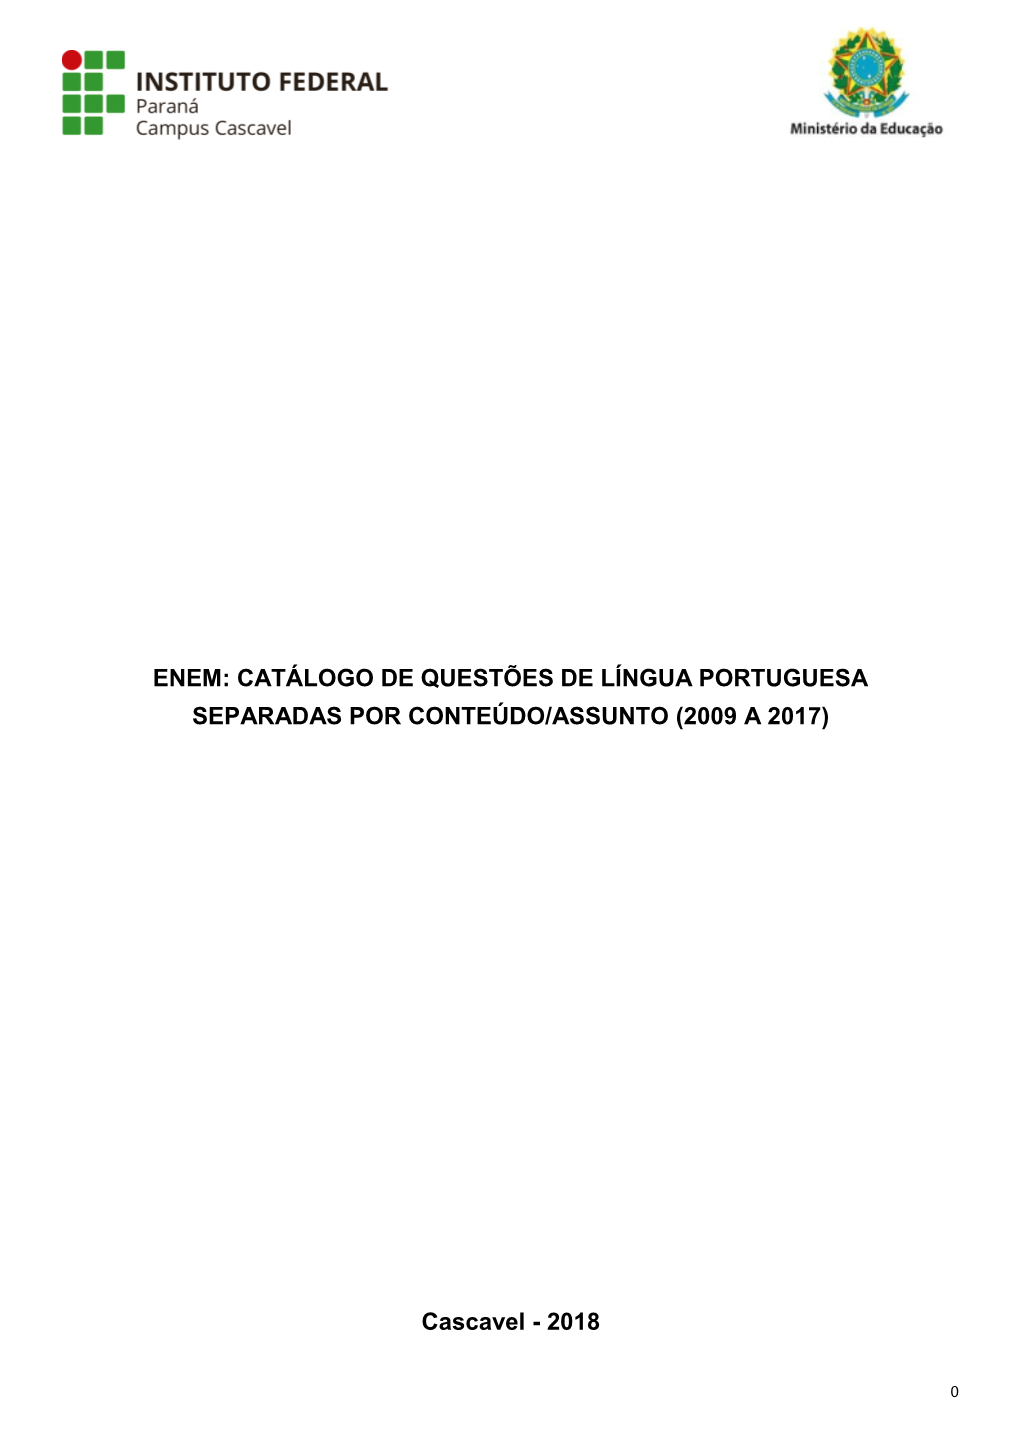 Enem: Catálogo De Questões De Língua Portuguesa Separadas Por Conteúdo/Assunto (2009 a 2017)